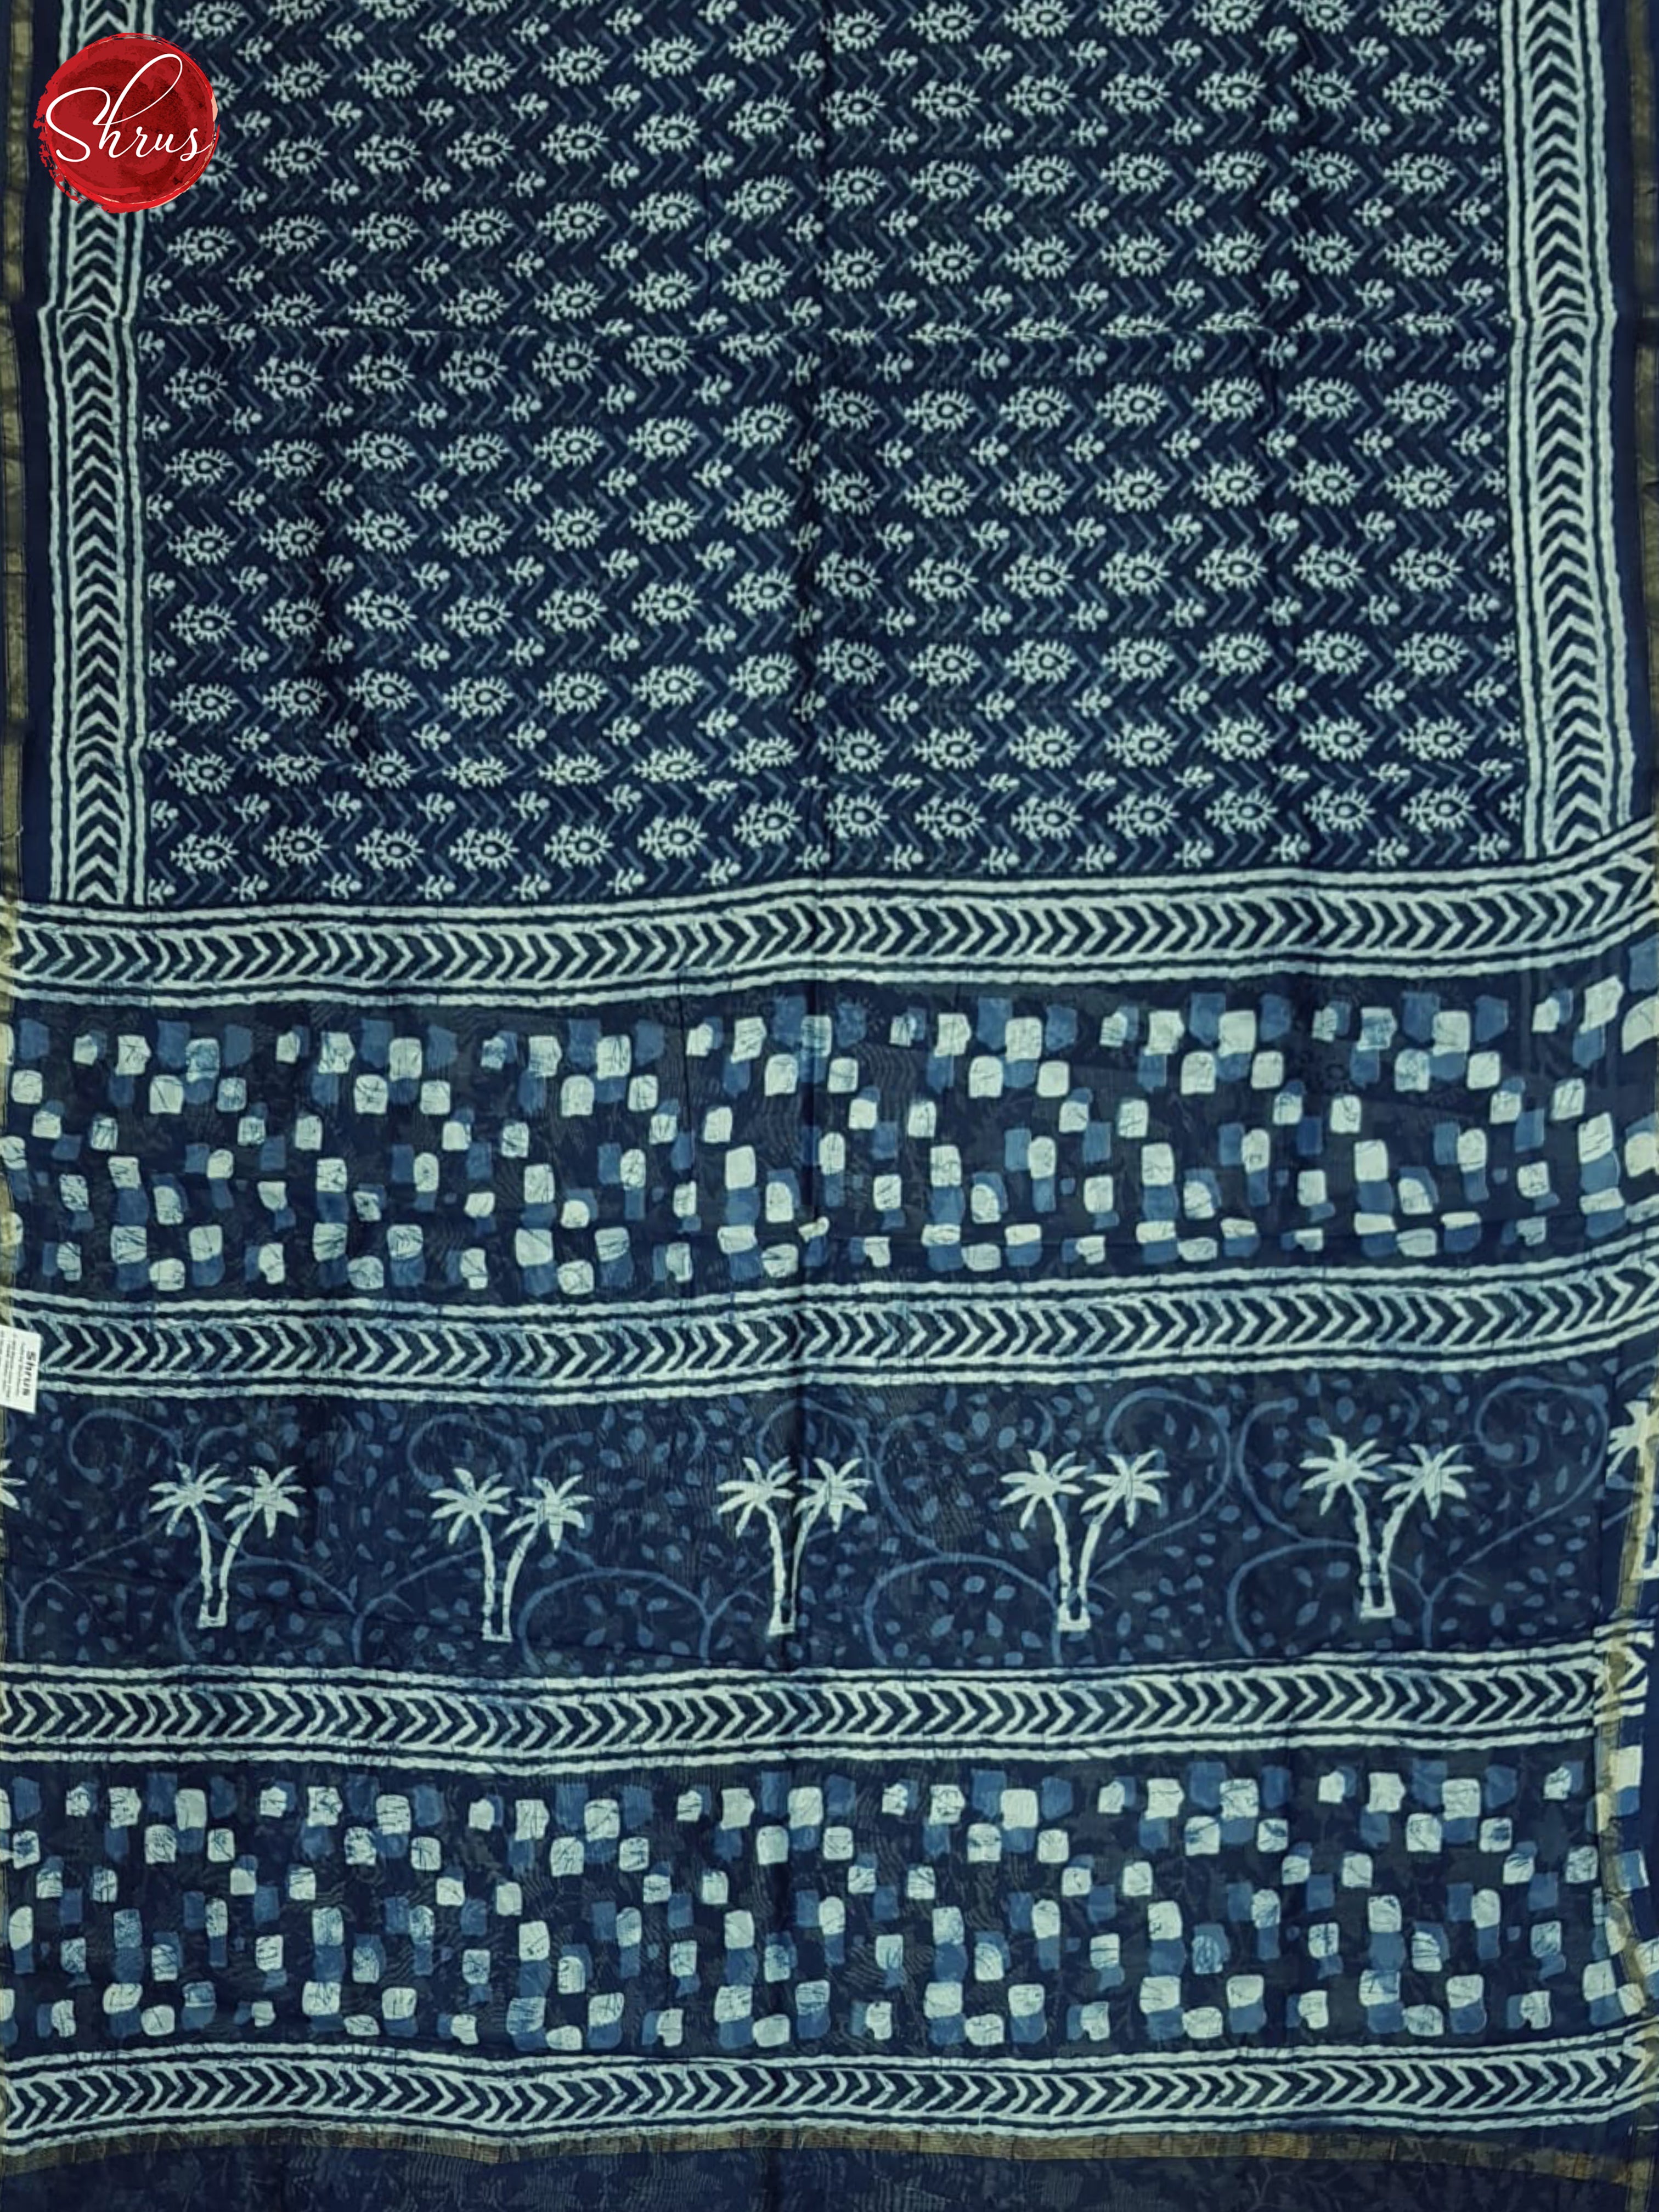 Blue(Single Tone)-Maheshwari Silk Cotton Saree - Shop on ShrusEternity.com